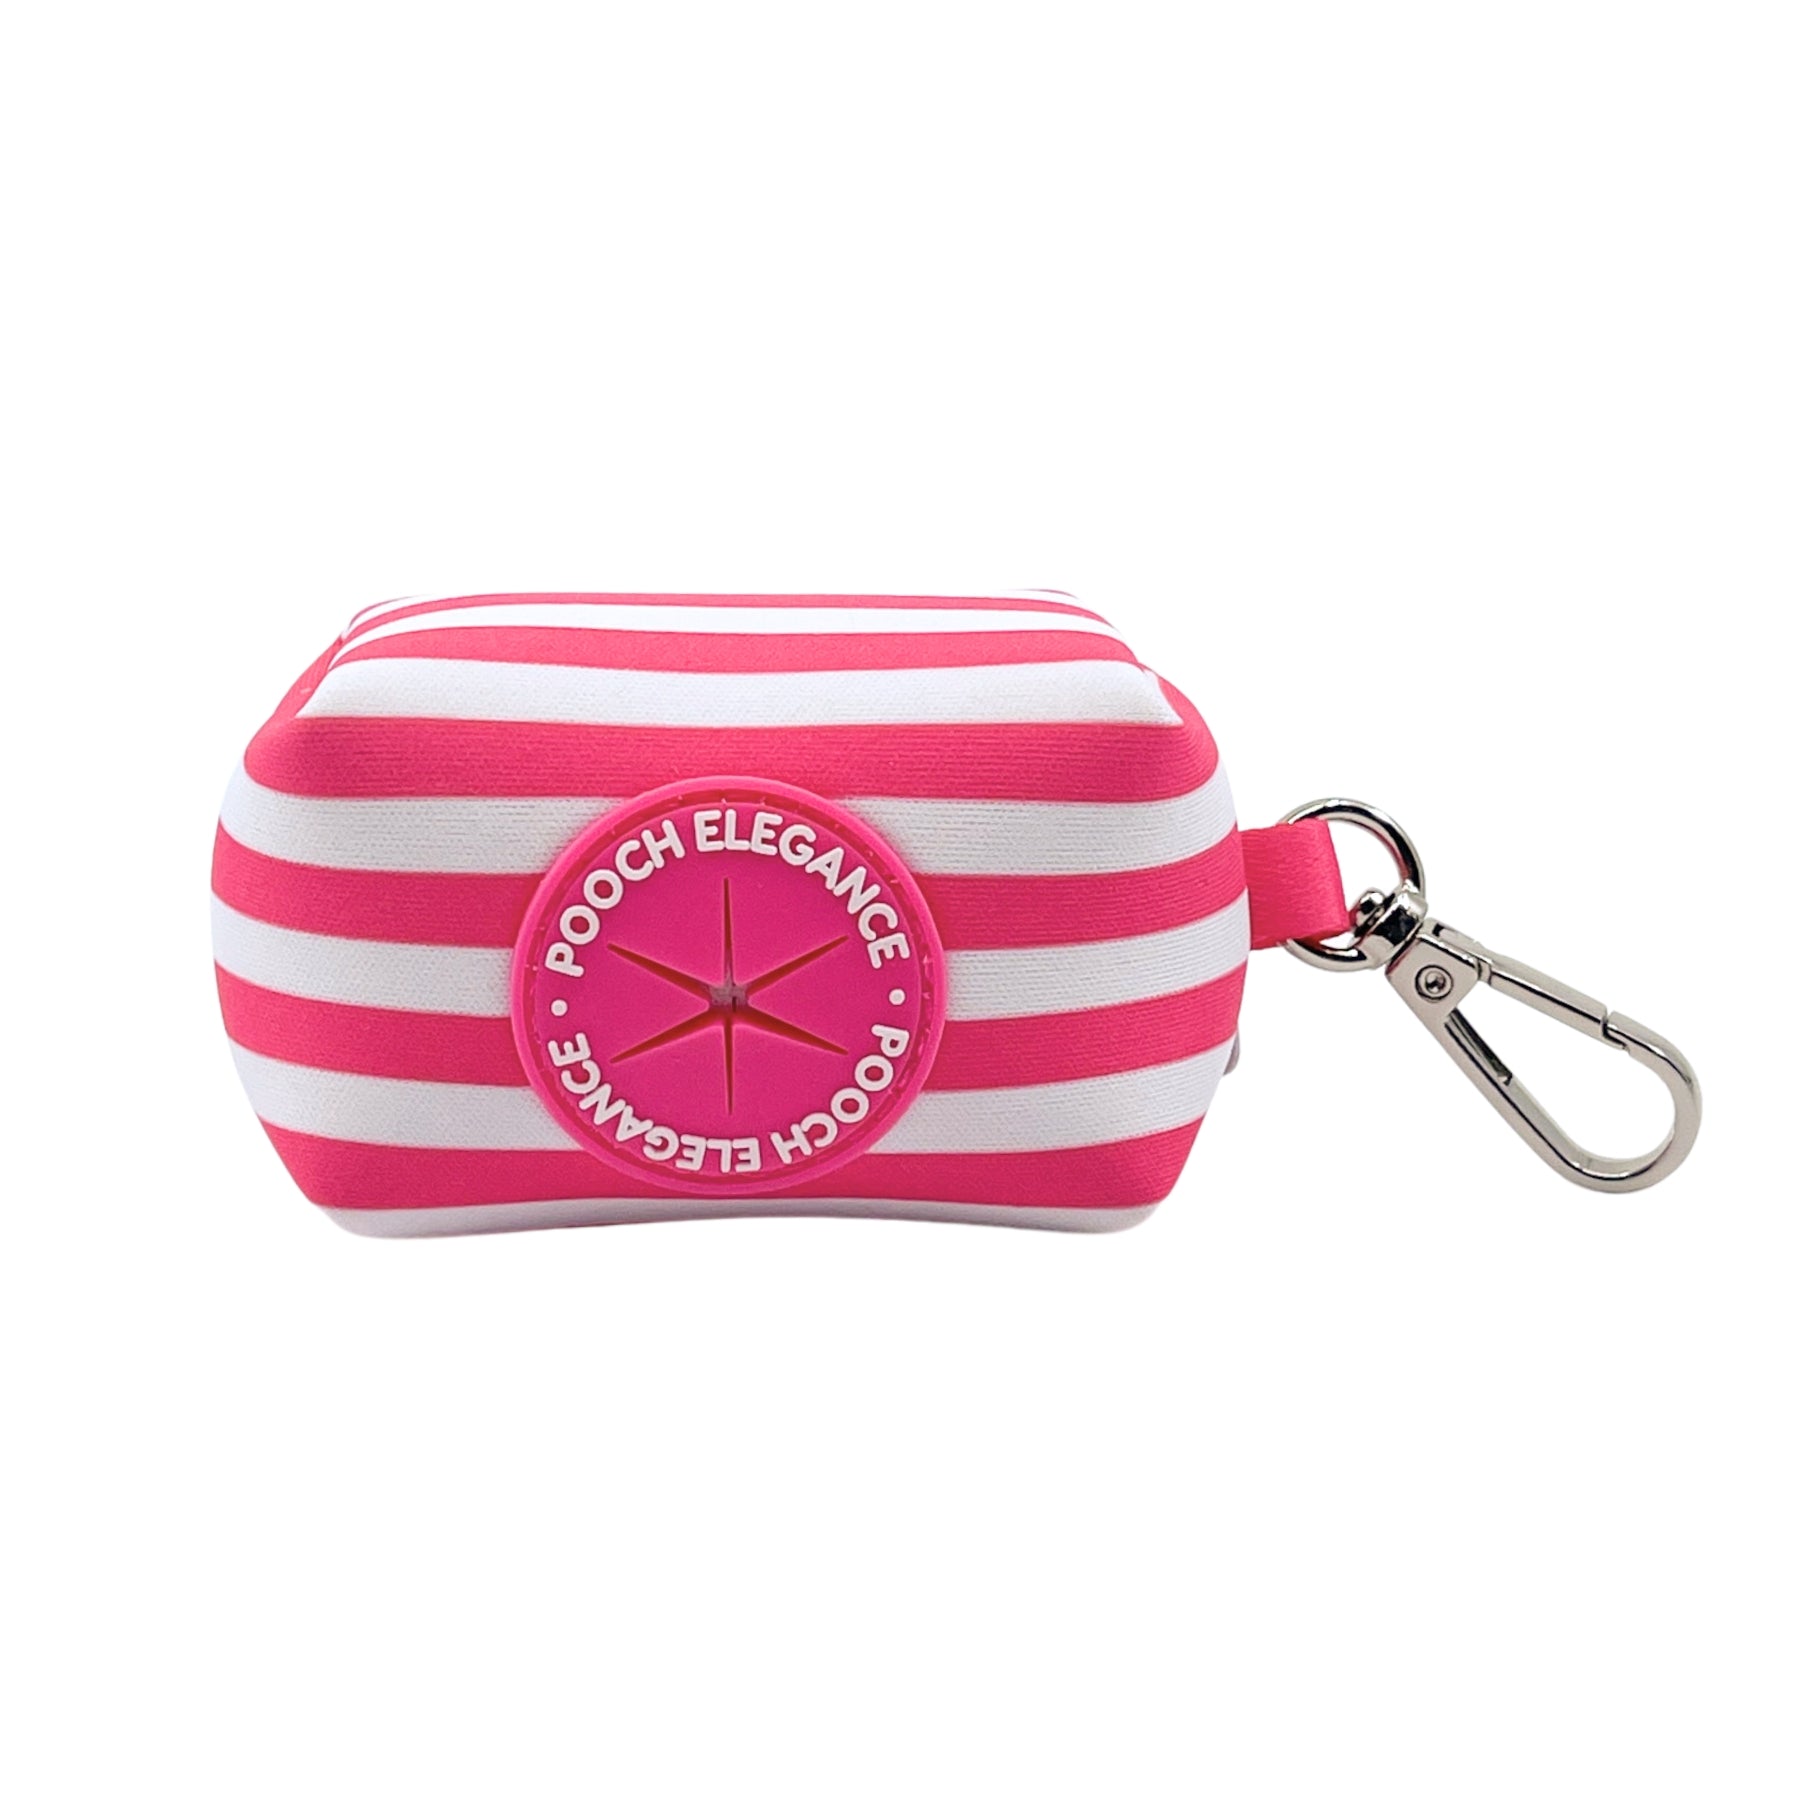 Carnival Stripe - Pink Waste Bag Holder - Pooch Luxury